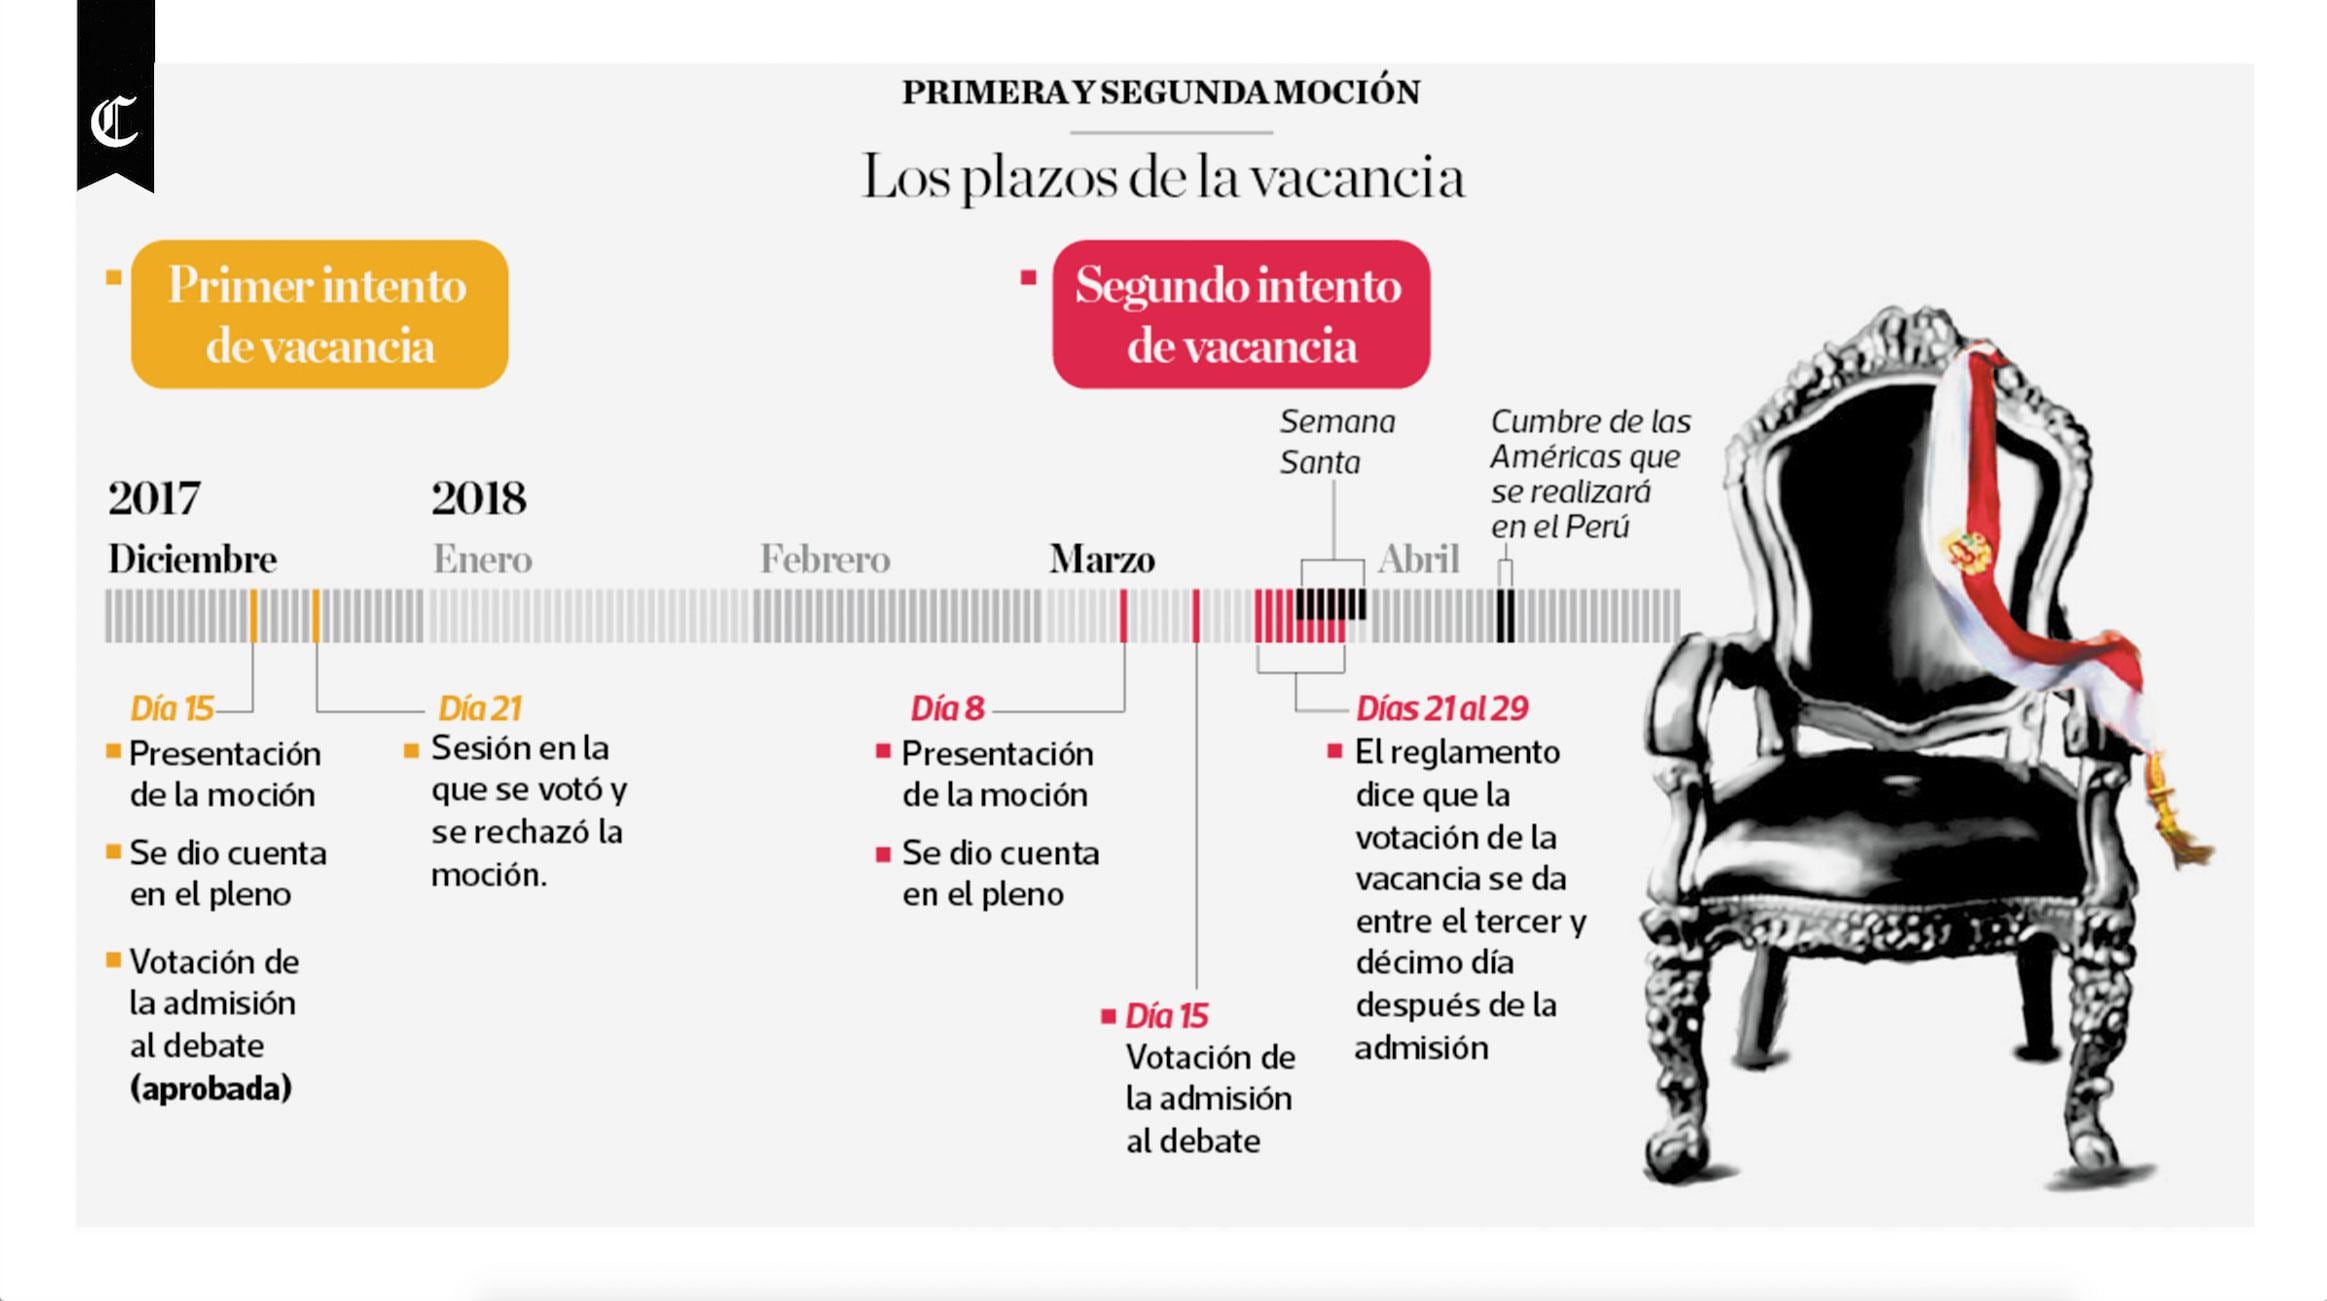 Infografía publicada en el diario El Comercio el día 08/03/2018